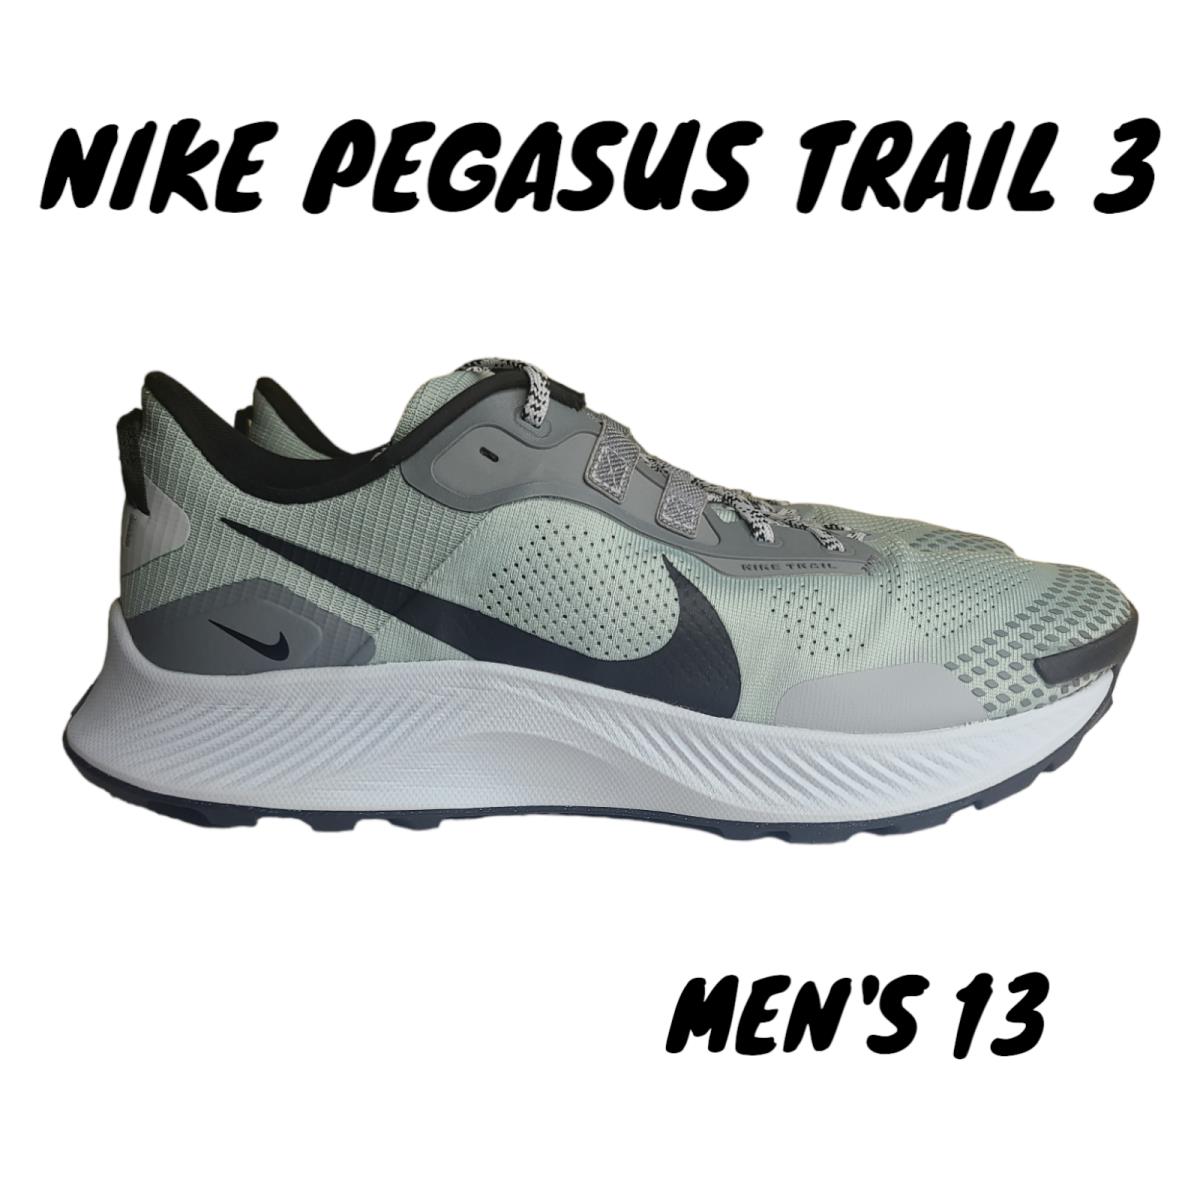 Nike Pegasus Trail 3 Dusty Sage Smoke Grey Mens Sz 13 Hiking Shoe DV3035-001 - Black, Green, White, Grey